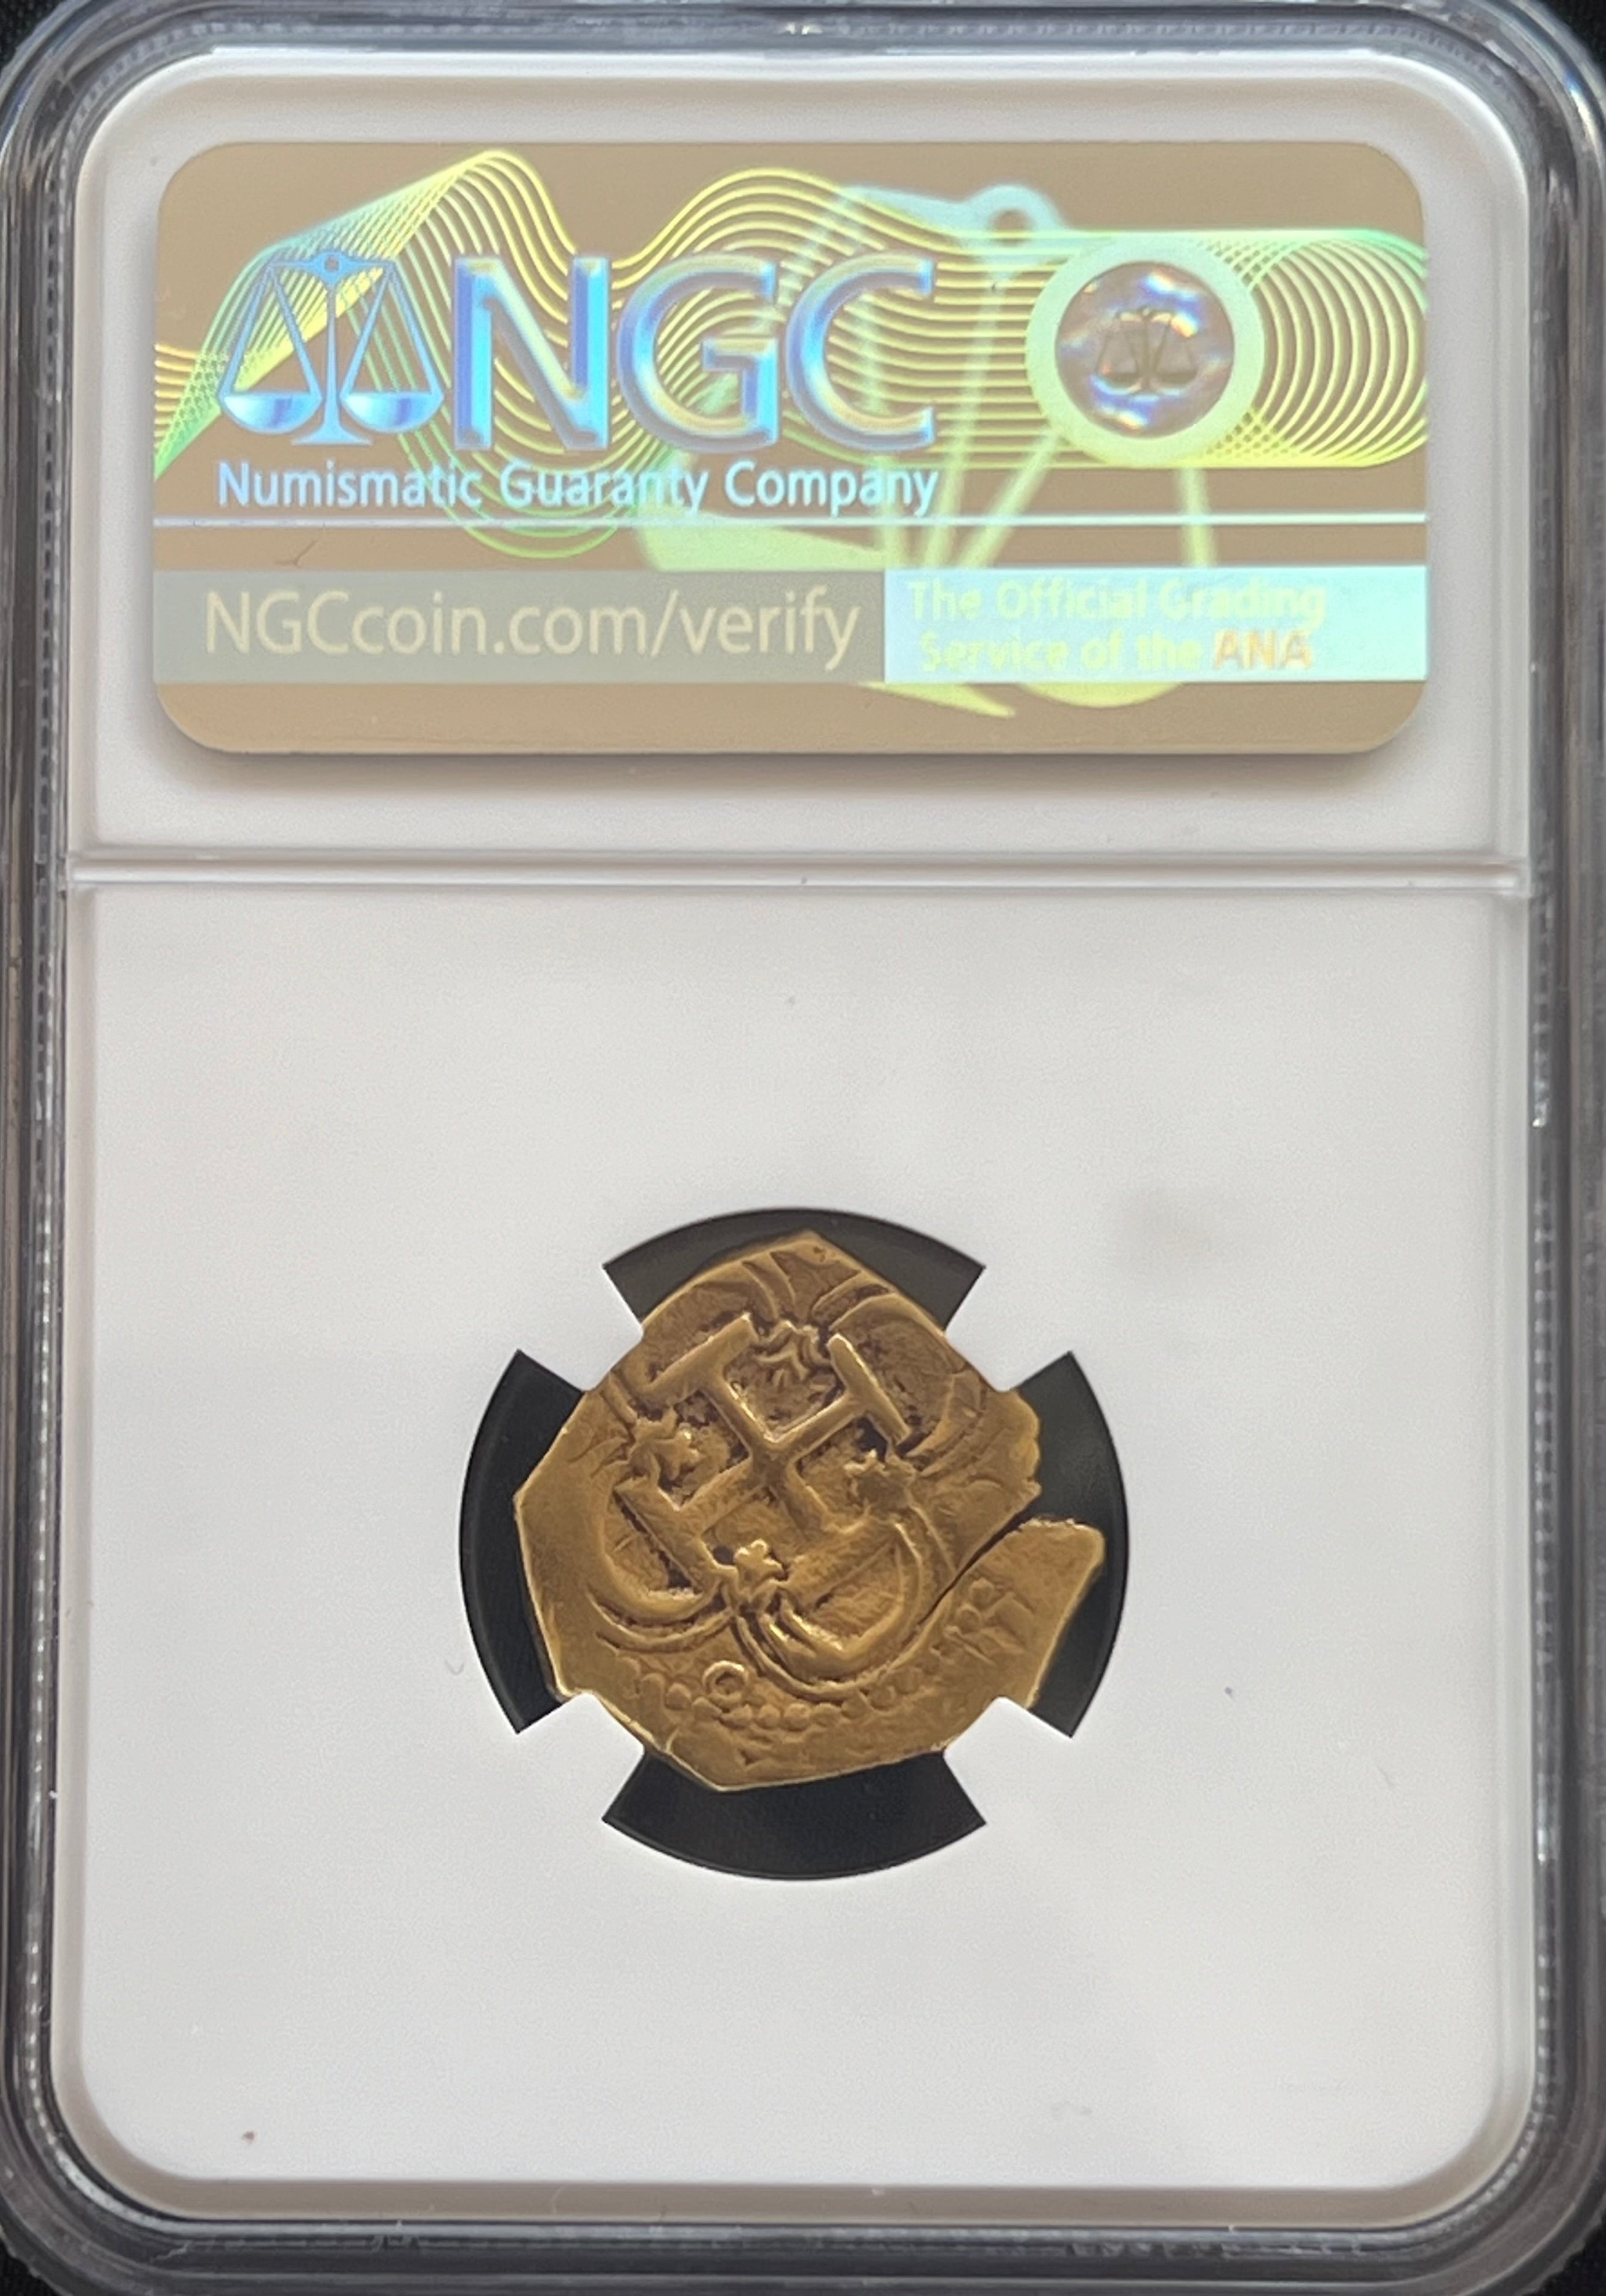 2 Escudos Seville, Spain Gold Coin NGC Grade XF Details (1556-98)